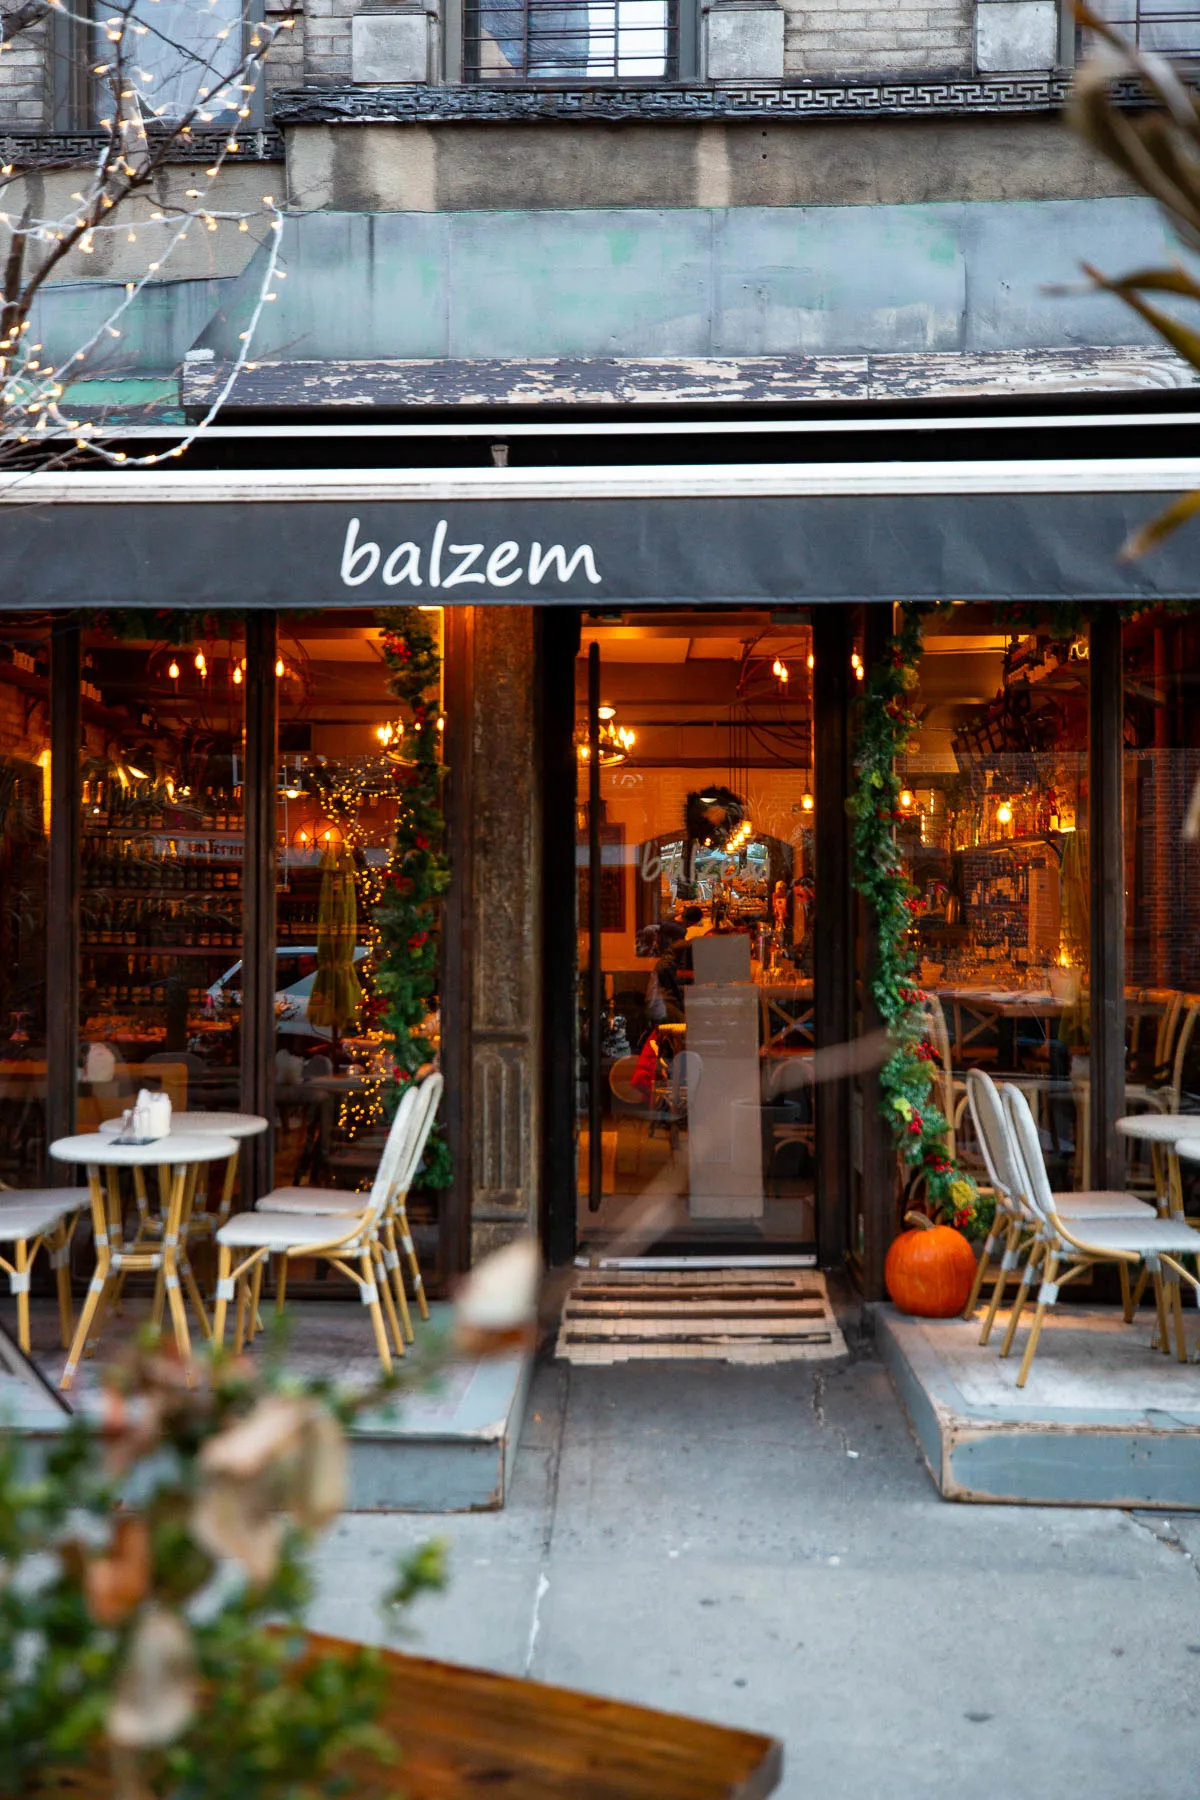 Balzem restaurant in SoHo